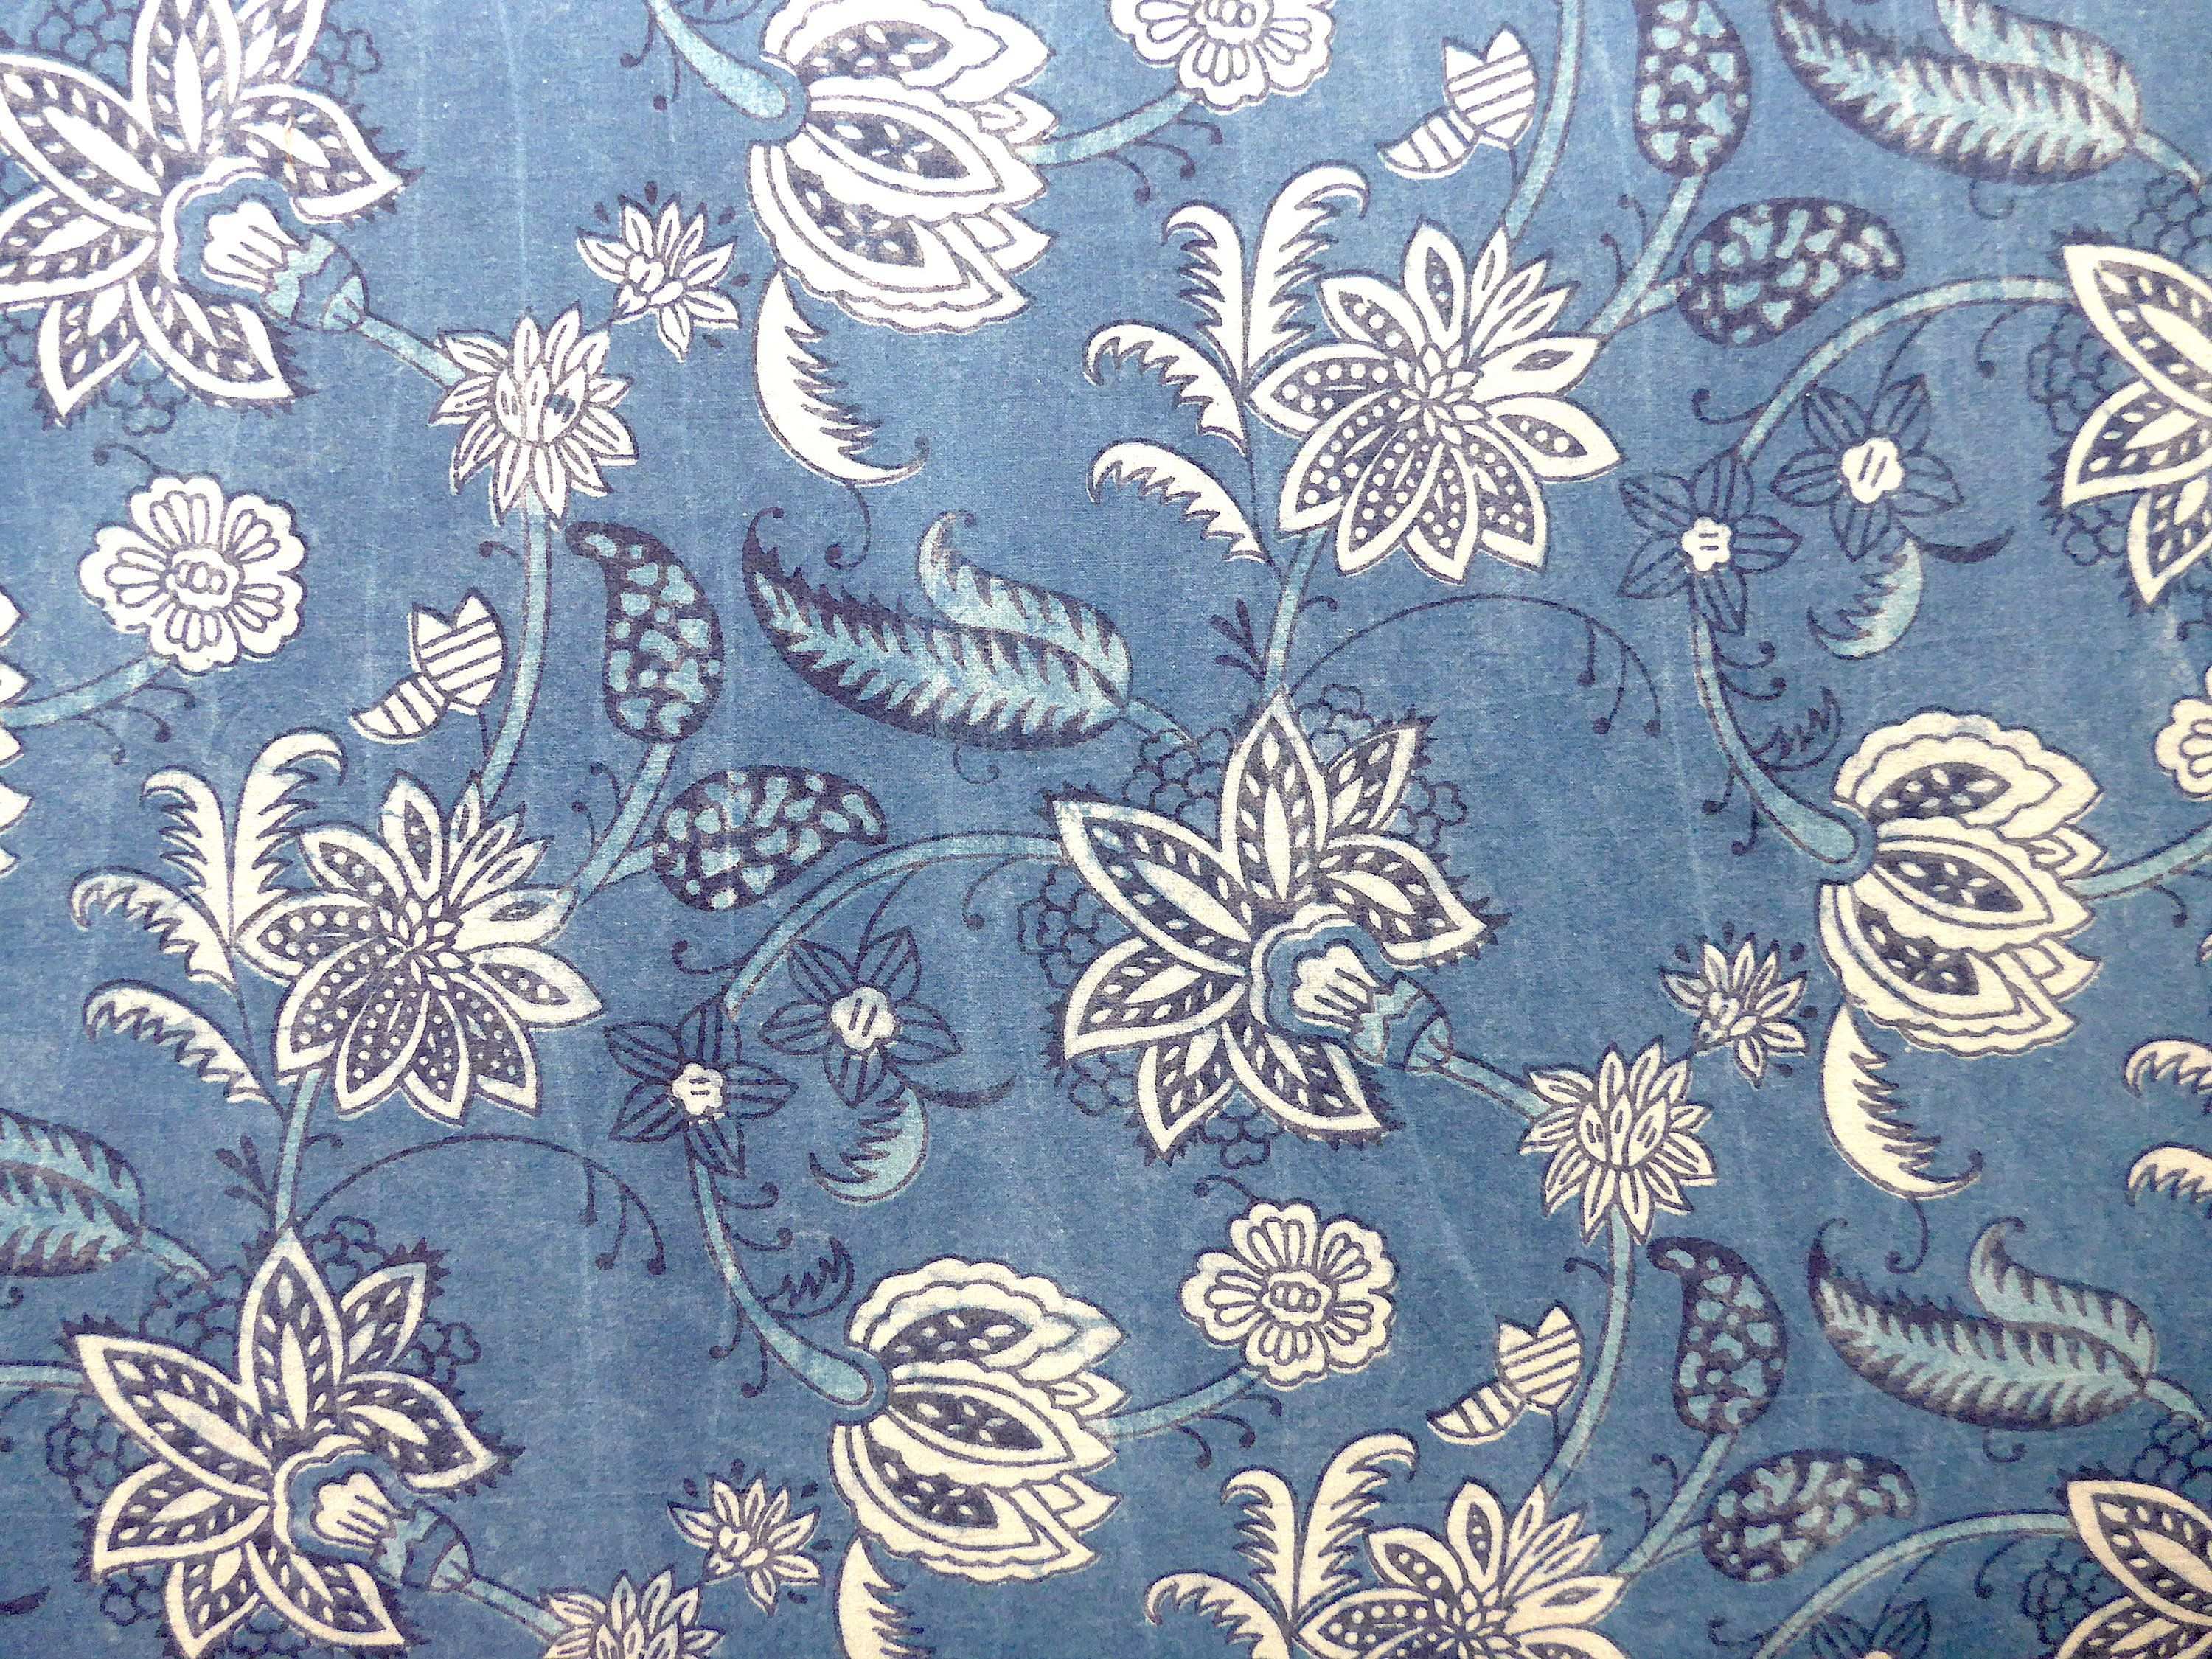 Stoff Blumen Der Nacht Auf Hellem Indigo Blockprint Indien Indischer Baumwollstoff Ethno Boho Muster Floral Blau Weiss Meterware Stoff Fabric Textiles